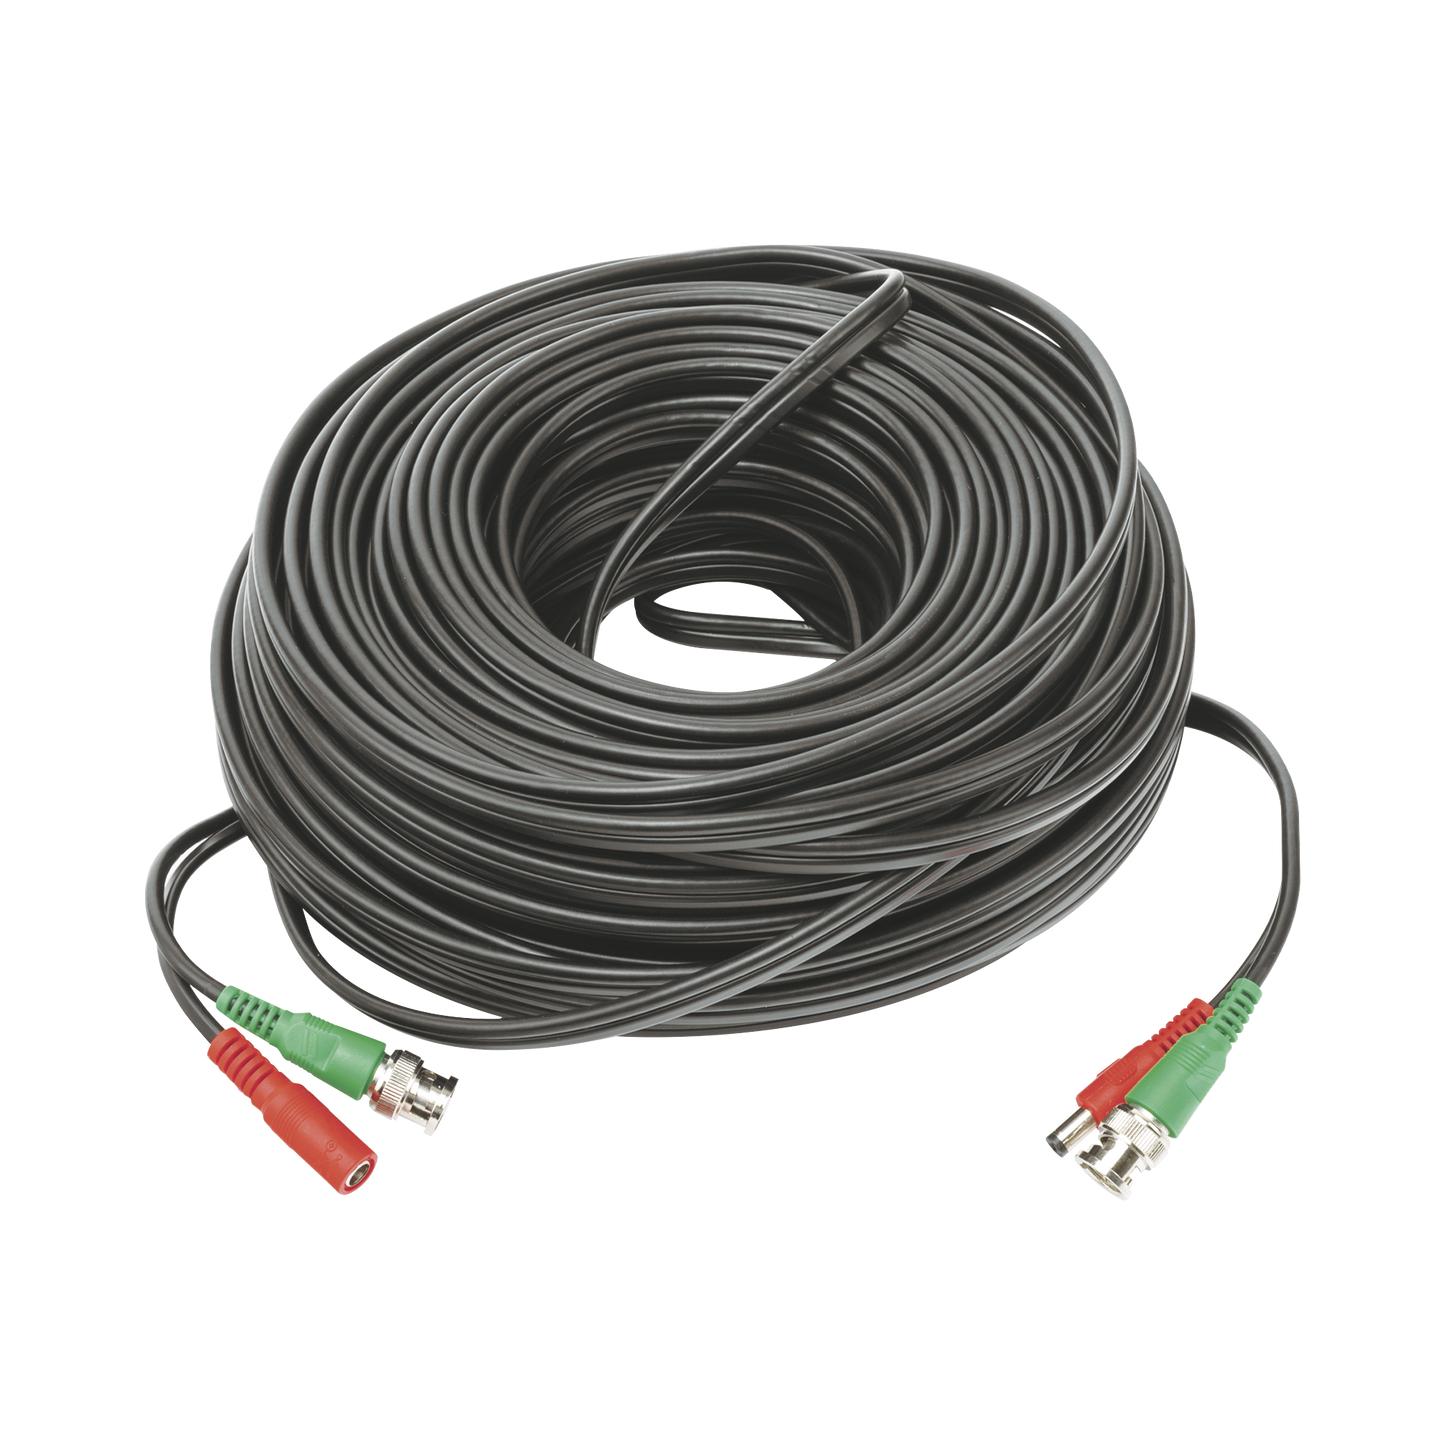 Cable coaxial ( BNC RG59 ) + Alimentación / SIAMÉS / 40 Metros / 100 % COBRE / Para Cámaras 4K  / Uso interior y exterior